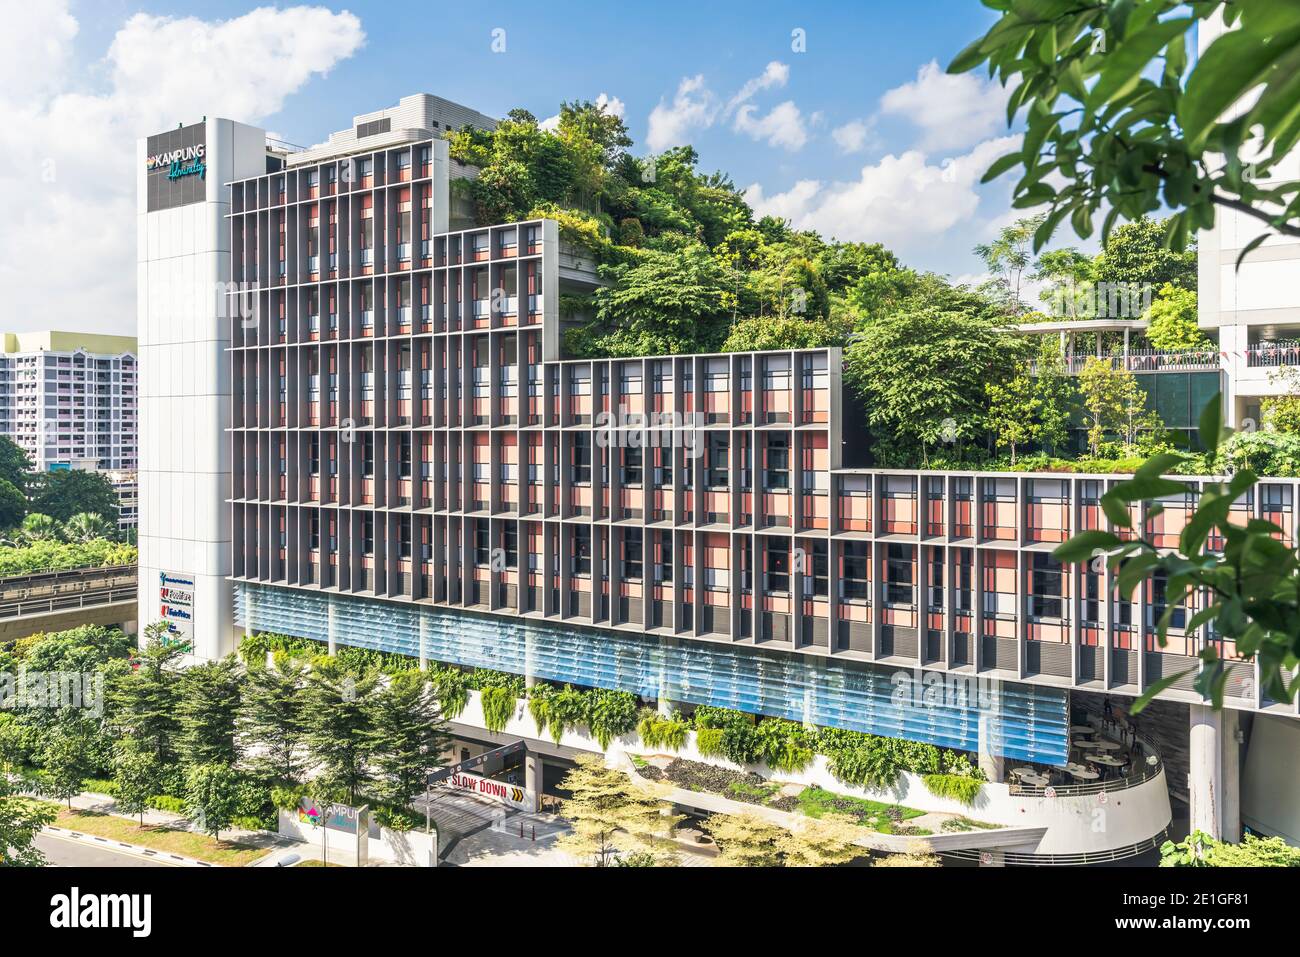 Kampung Admiralty à Singapour, un développement intégré de communauté verte. Bâtiment mondial de l'année au Festival mondial d'architecture 2018 Banque D'Images